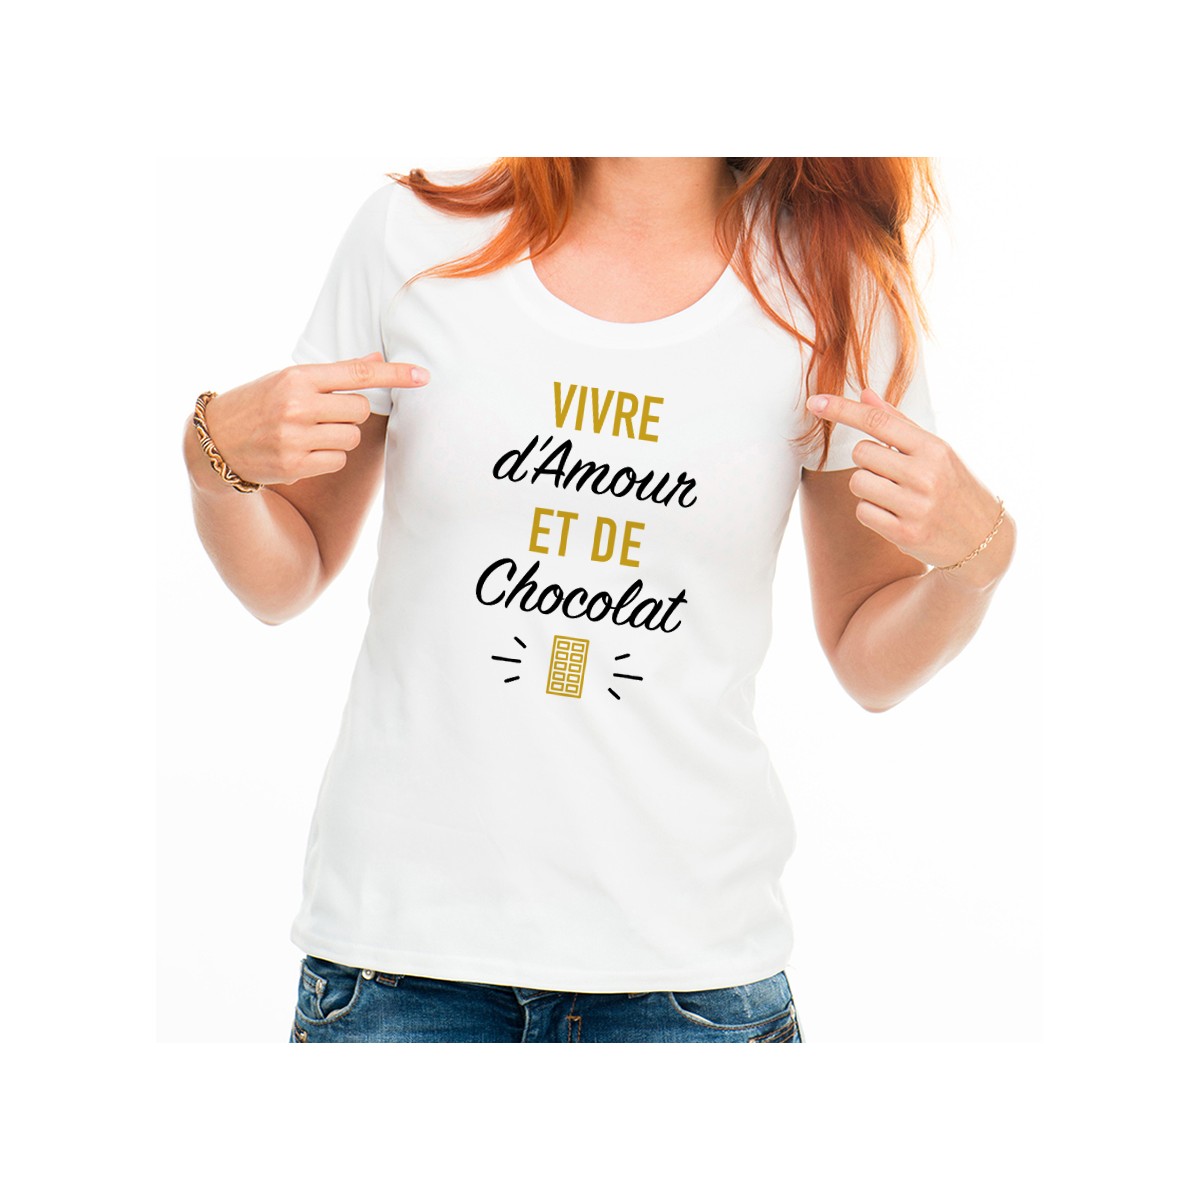 T-shirt Vivre d'Amour et de Chocolat